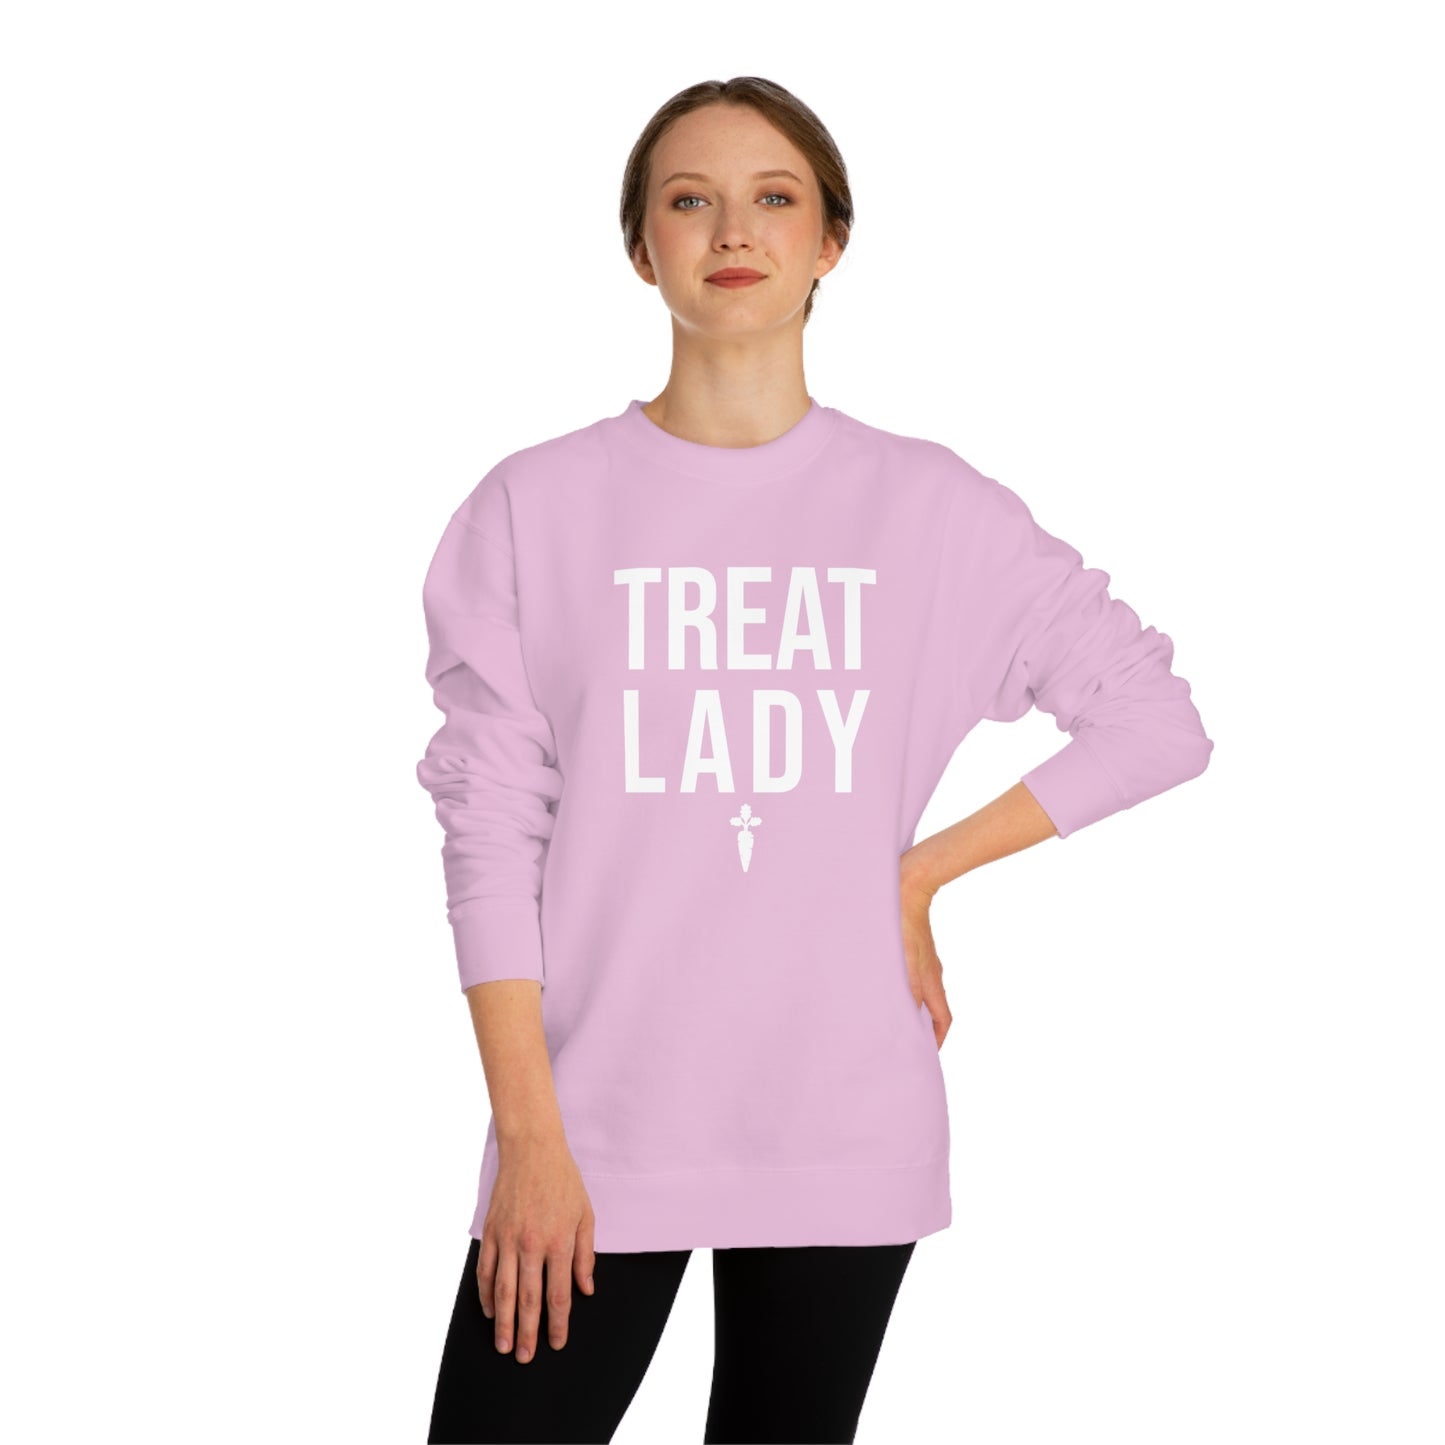 Copy of Treat Lady Crew Neck Sweatshirt